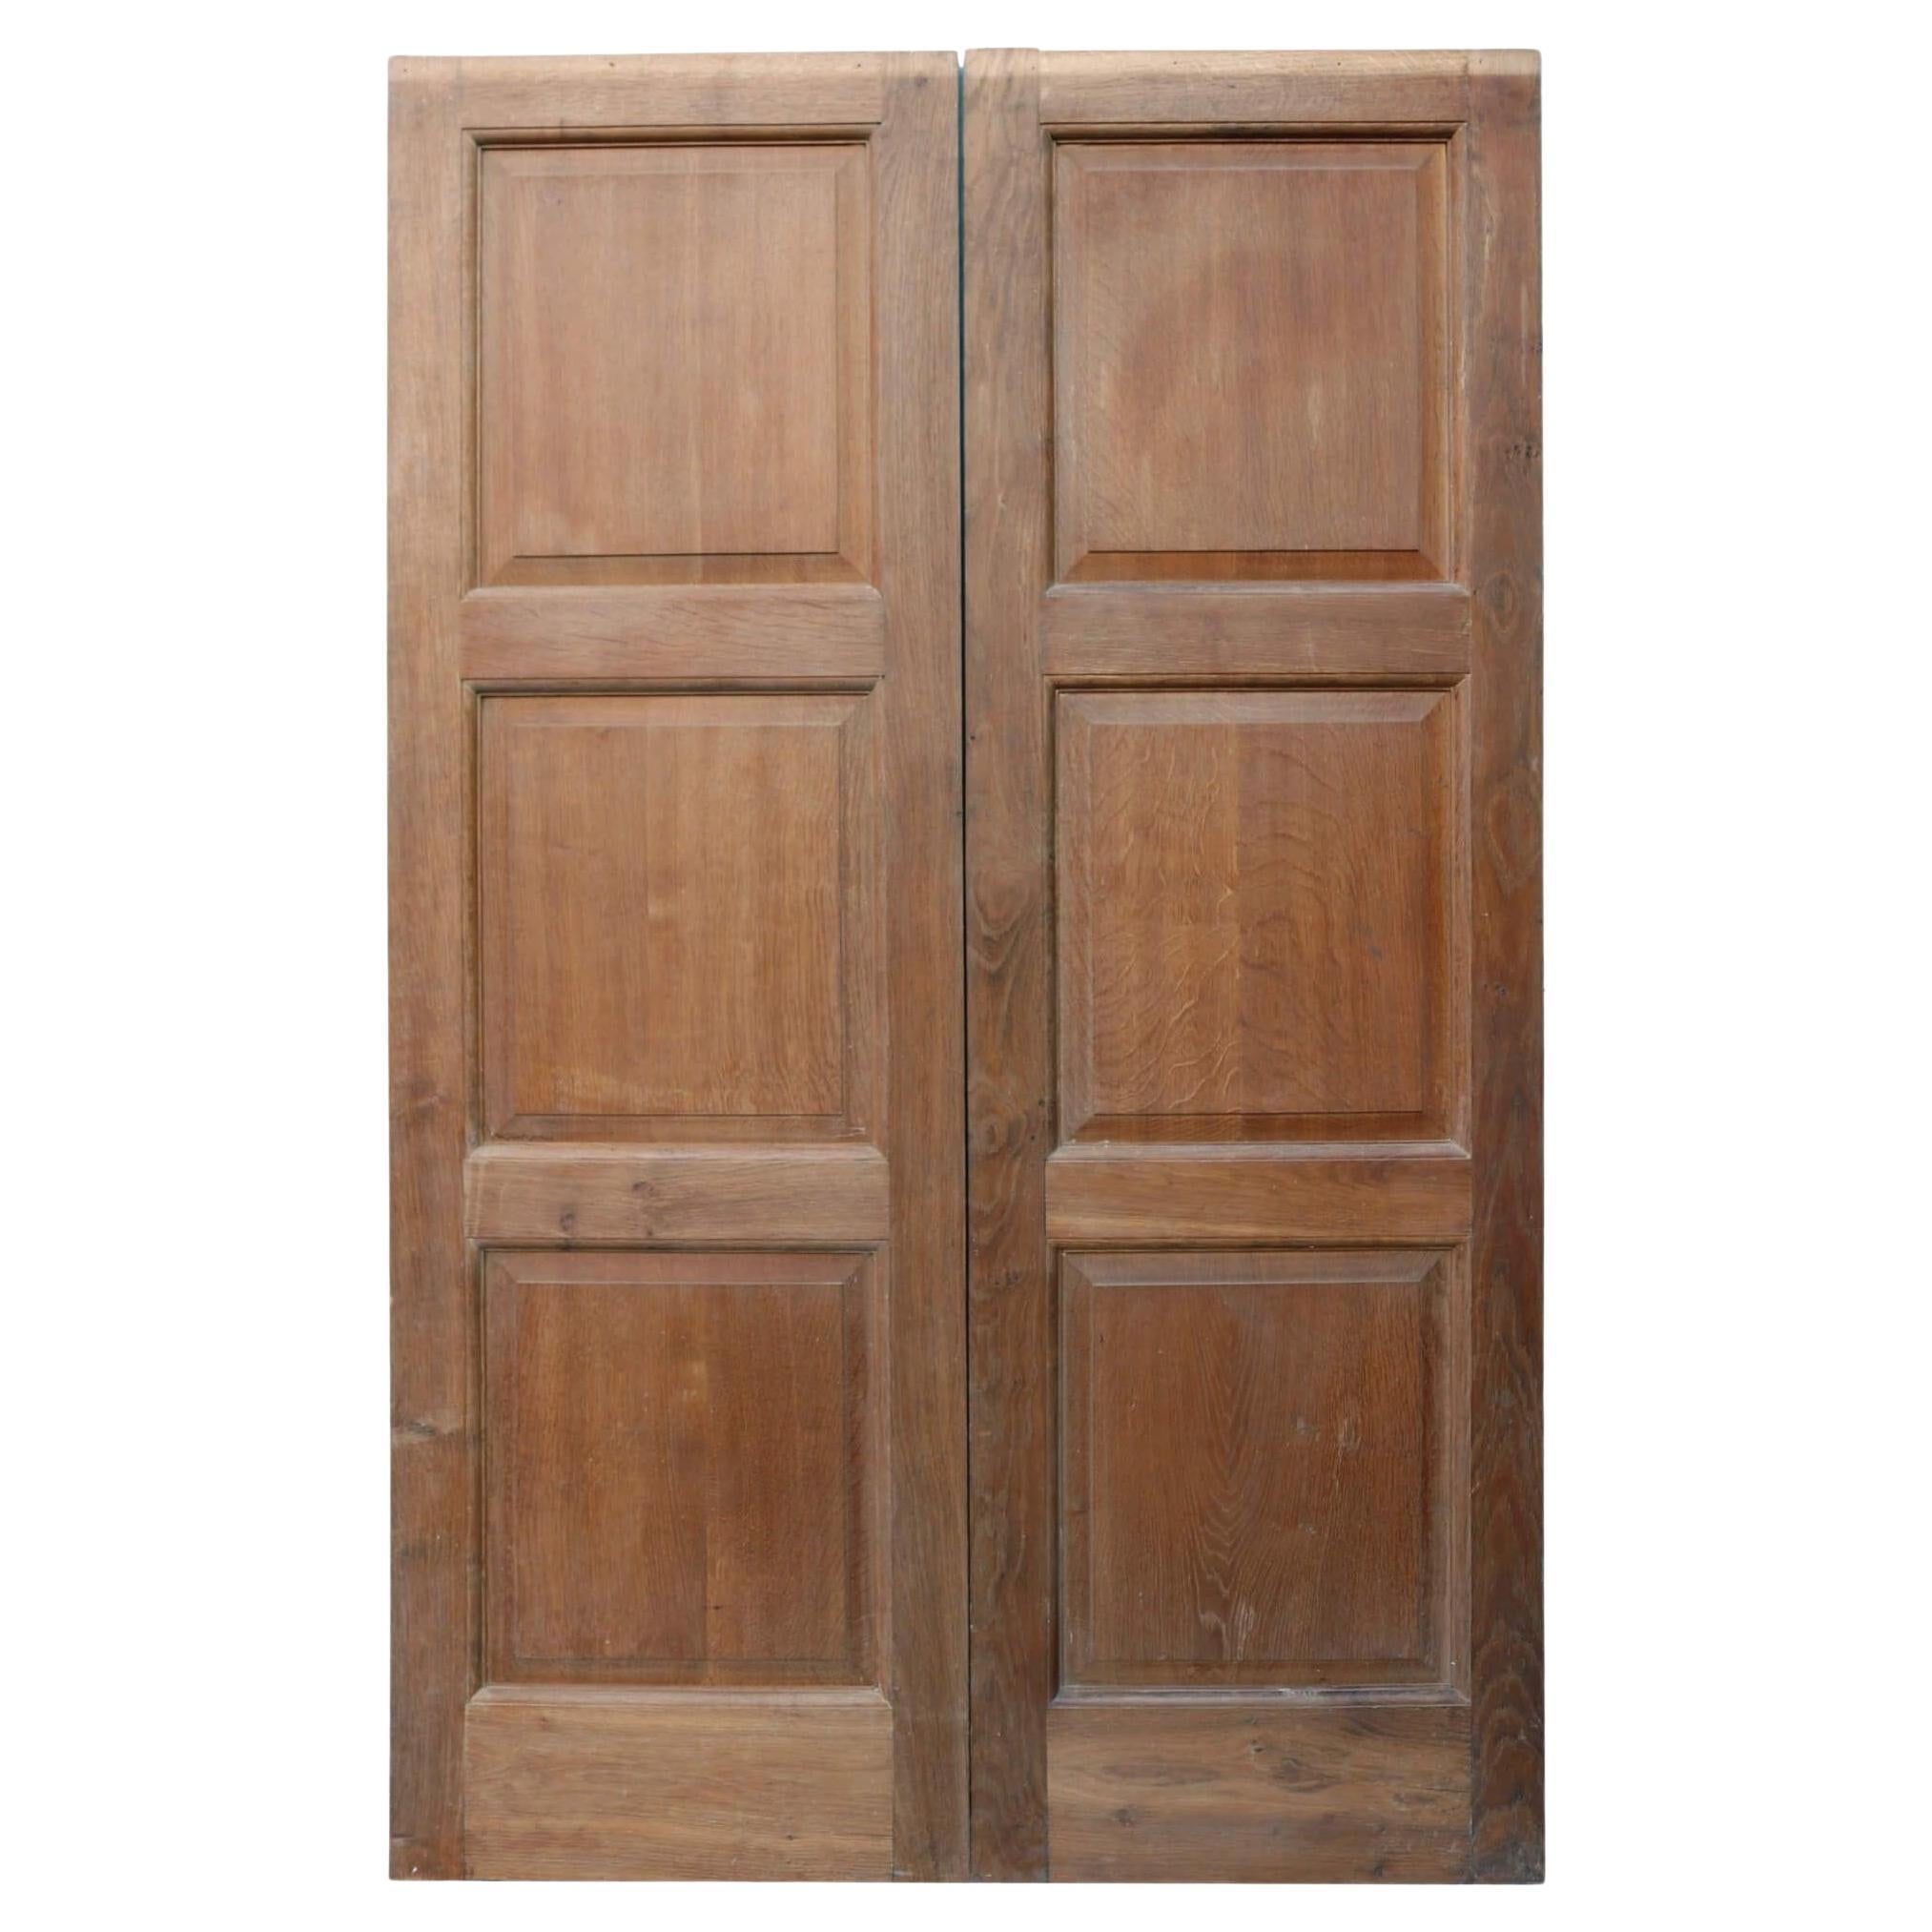 Set von Doppeltüren aus Eichenholz im georgianischen Stil